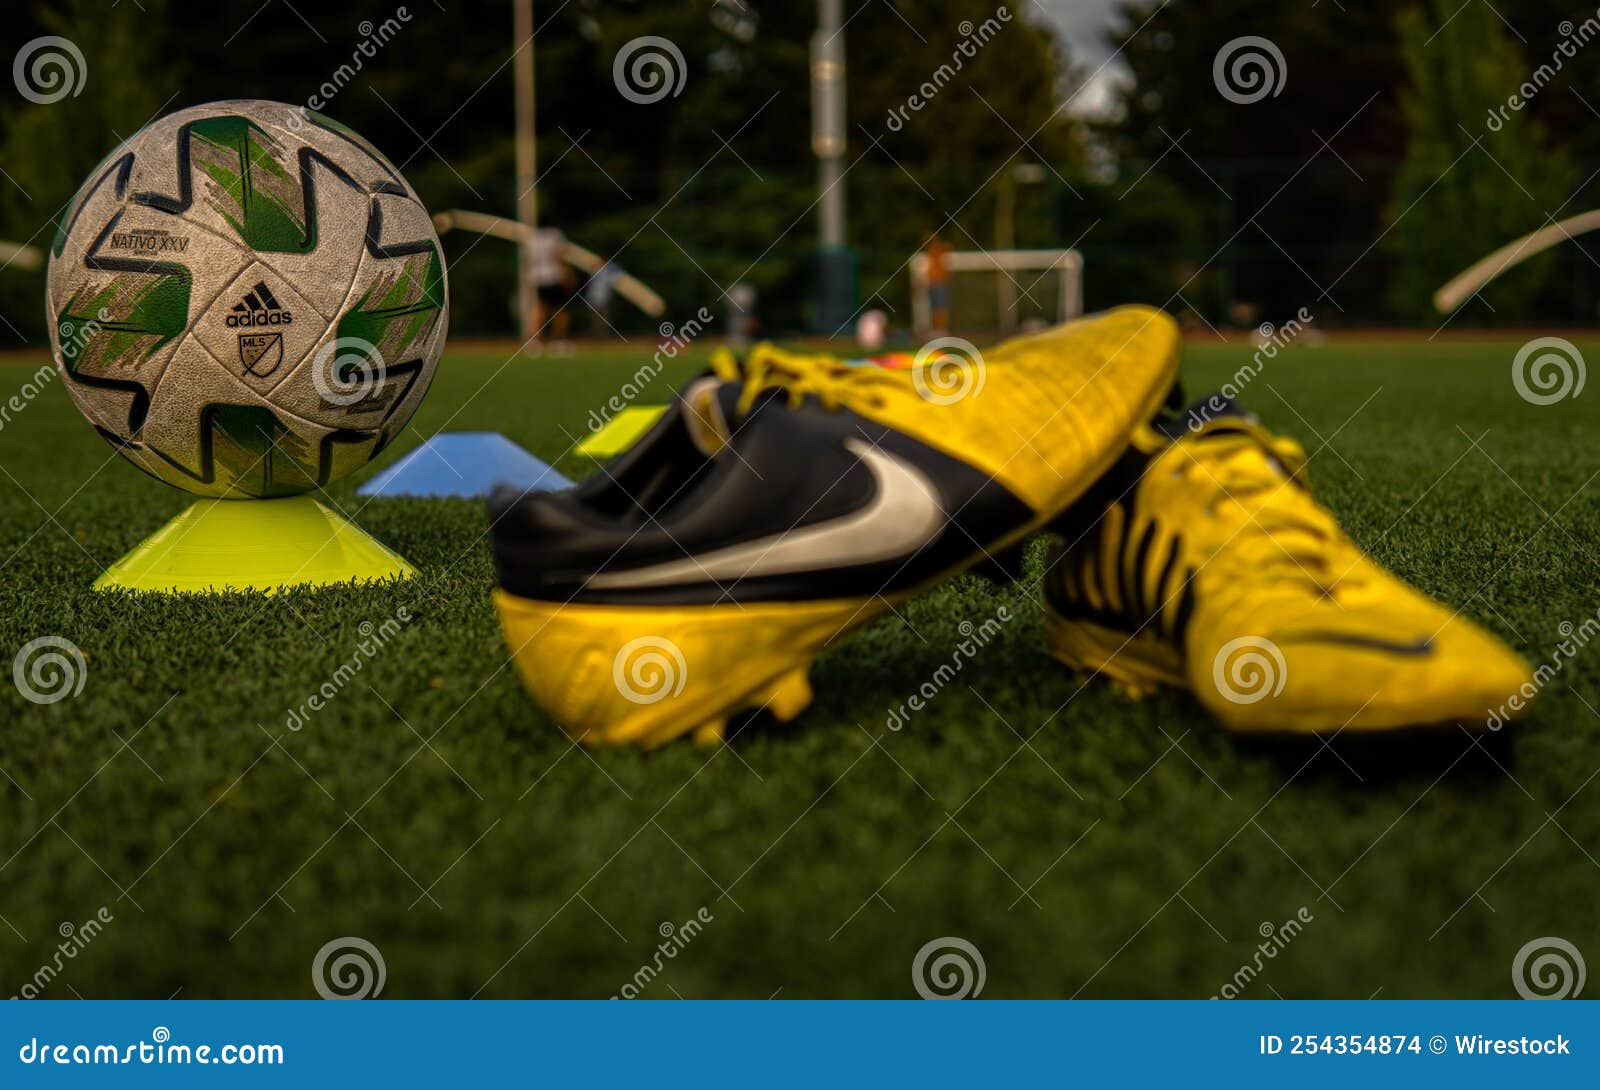 Toma De Un Nike Amarillo Ctr360 Zapatillas De Fútbol Maestro Y Una De Adidas En El Campo Imagen de archivo editorial - Imagen de cuero, zapato: 254354874